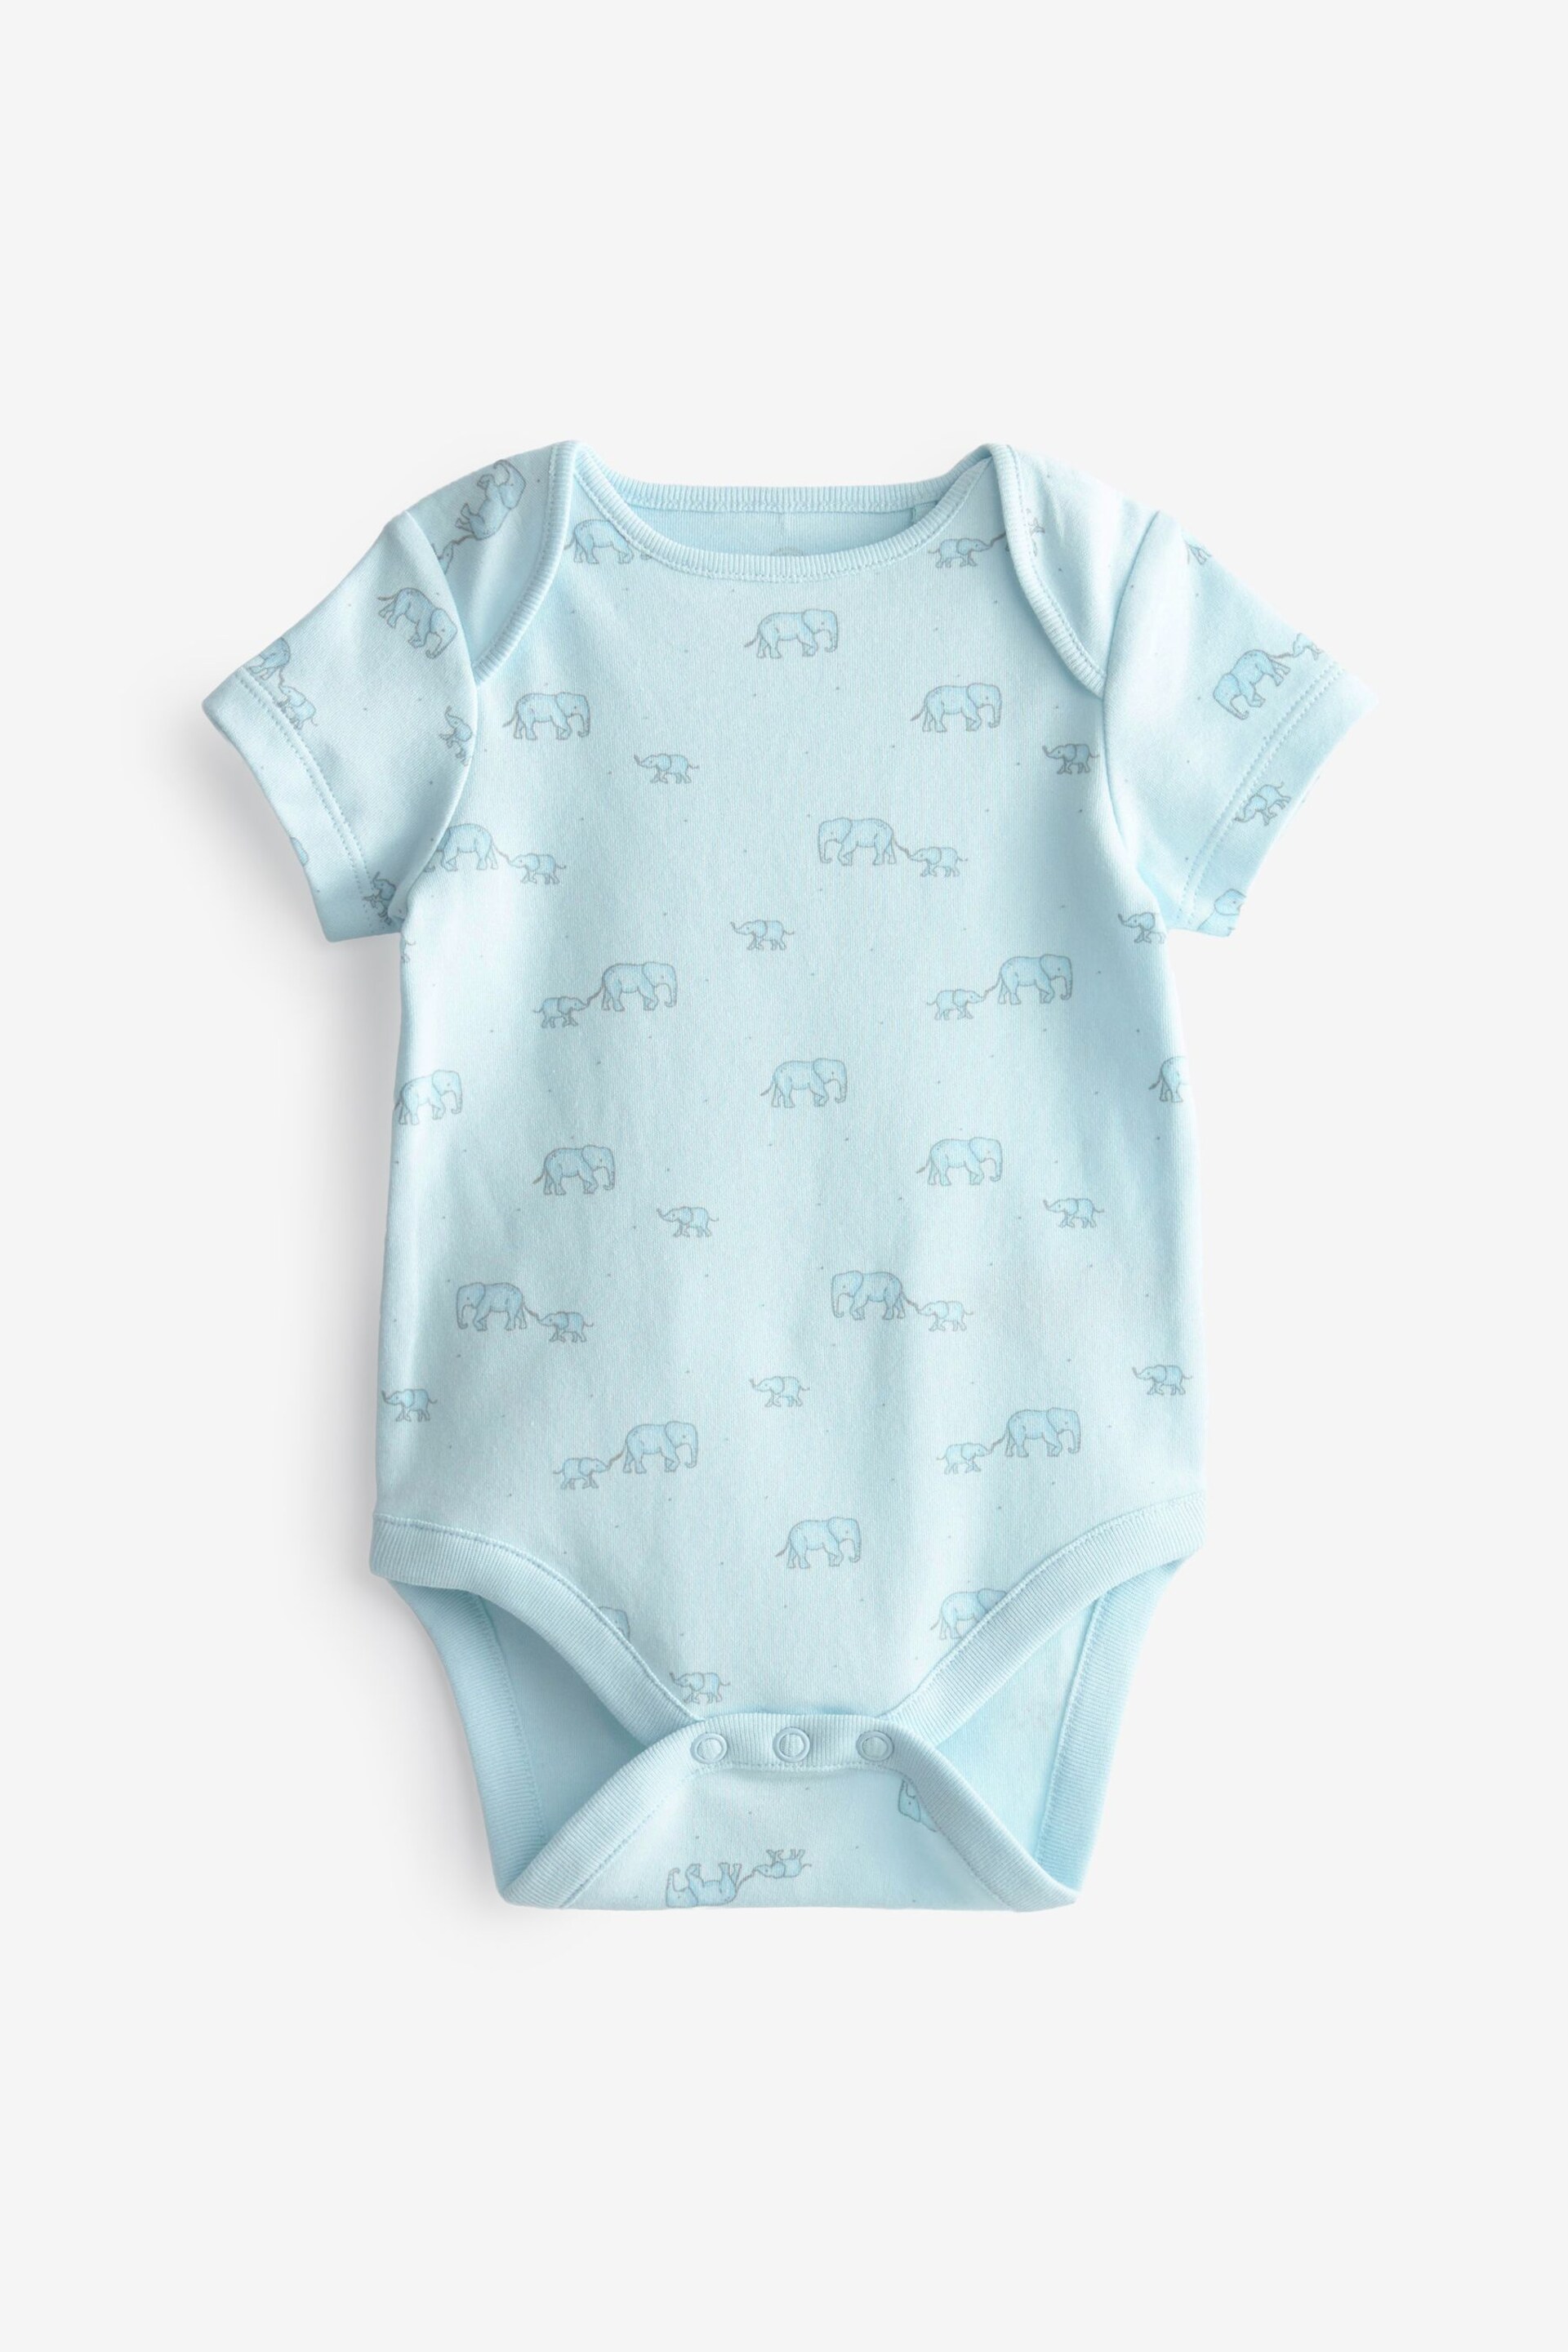 Blue/White Elephant 4 Pack Short Sleeve Baby Bodysuits - Image 3 of 12